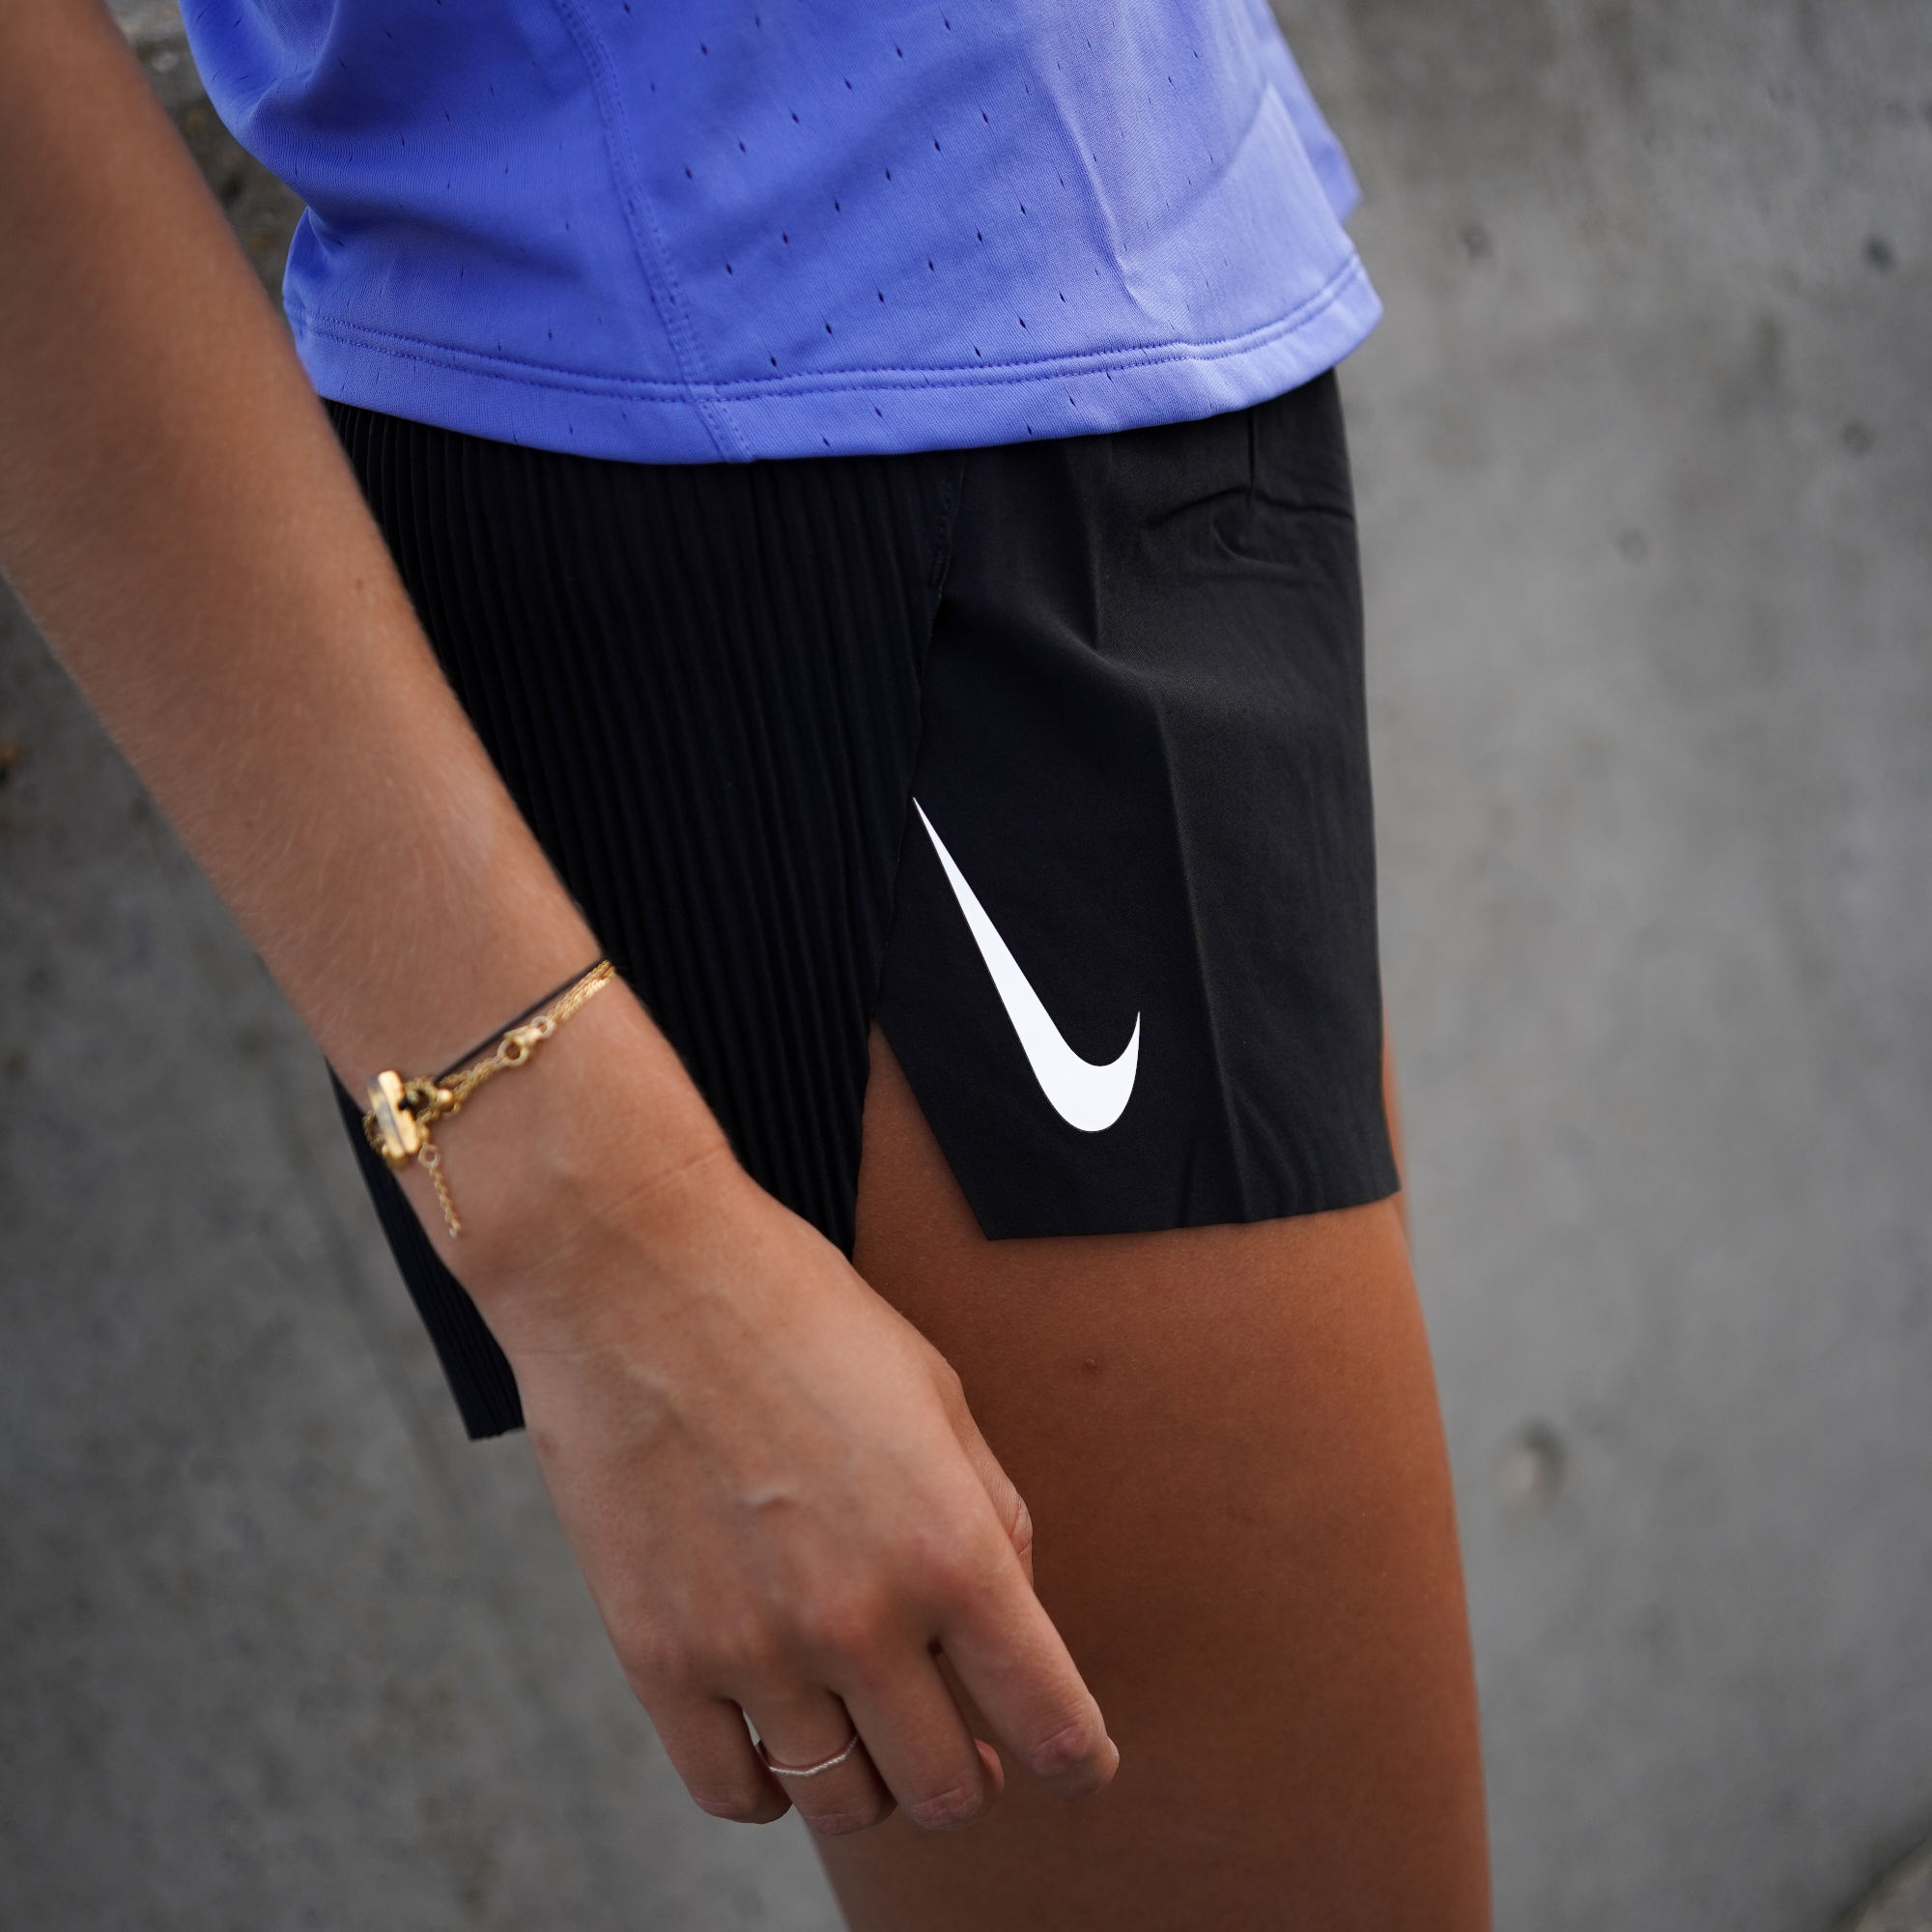 Shorts Nike W NK AEROSWIFT SHORT 